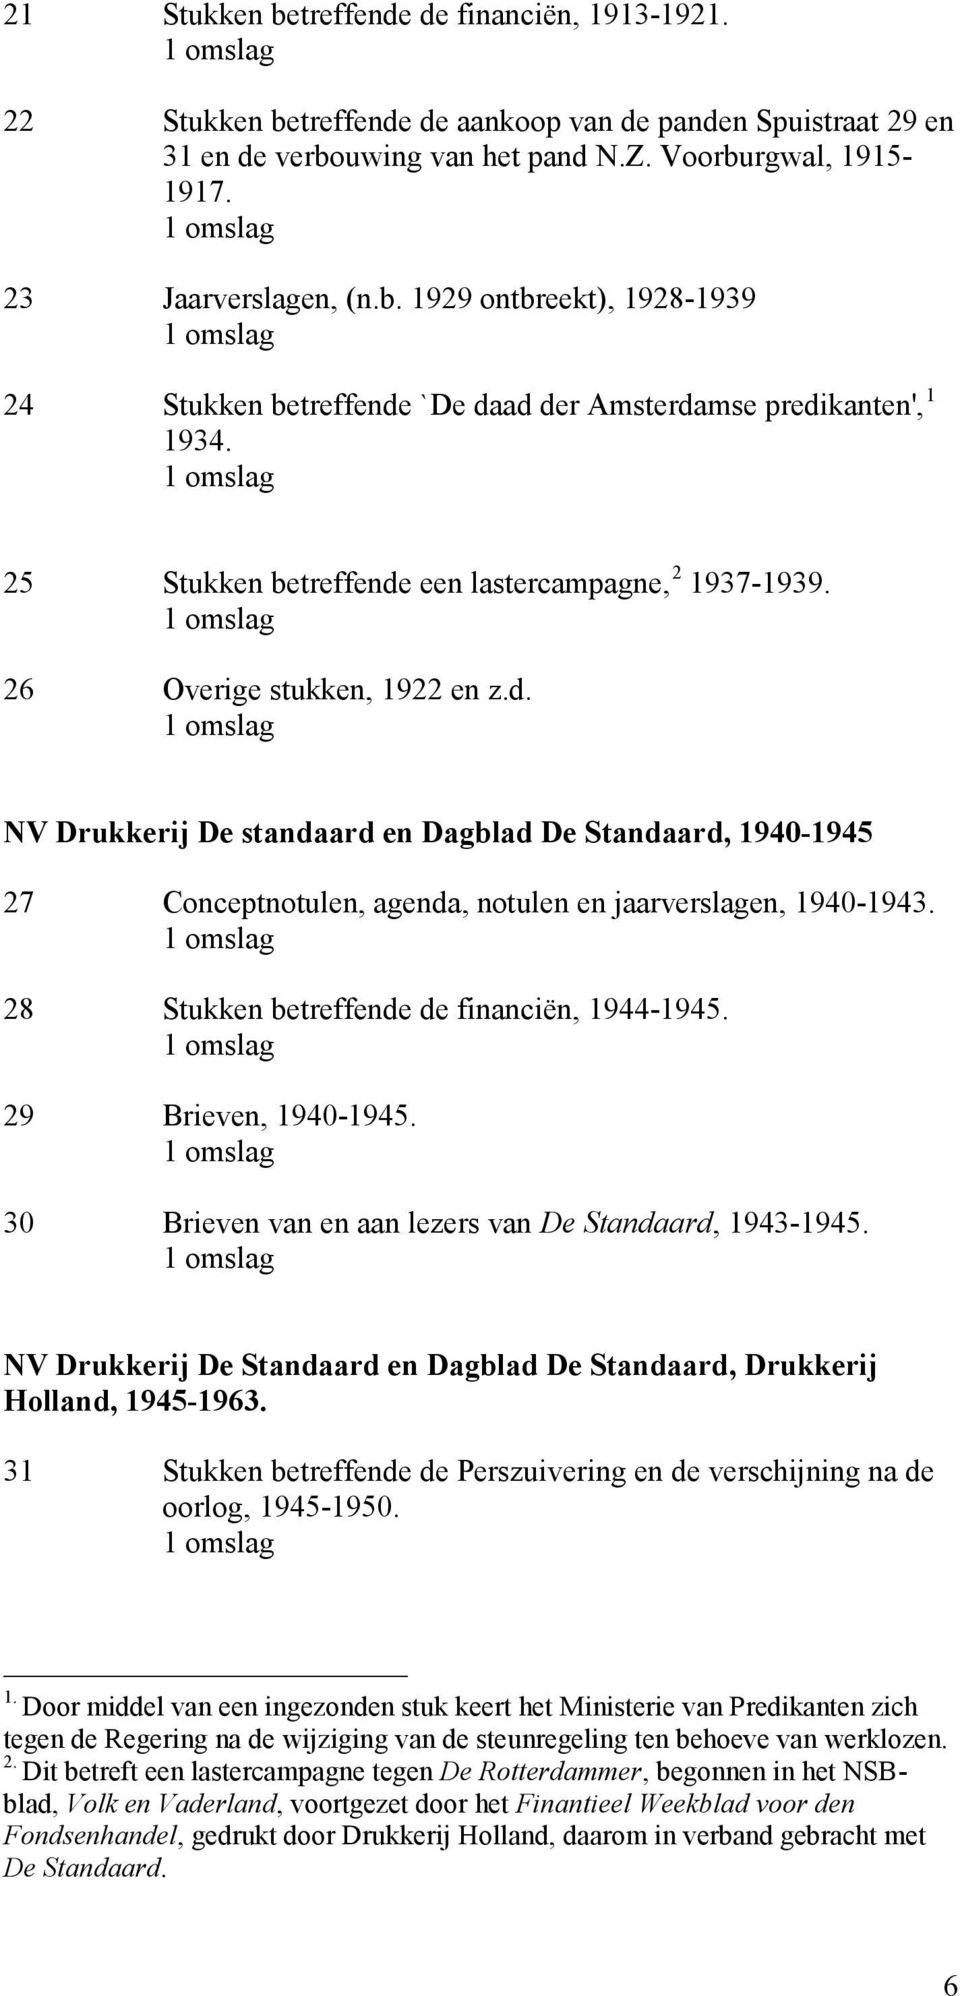 28 Stukken betreffende de financiën, 1944-1945. 29 Brieven, 1940-1945. 30 Brieven van en aan lezers van De Standaard, 1943-1945.